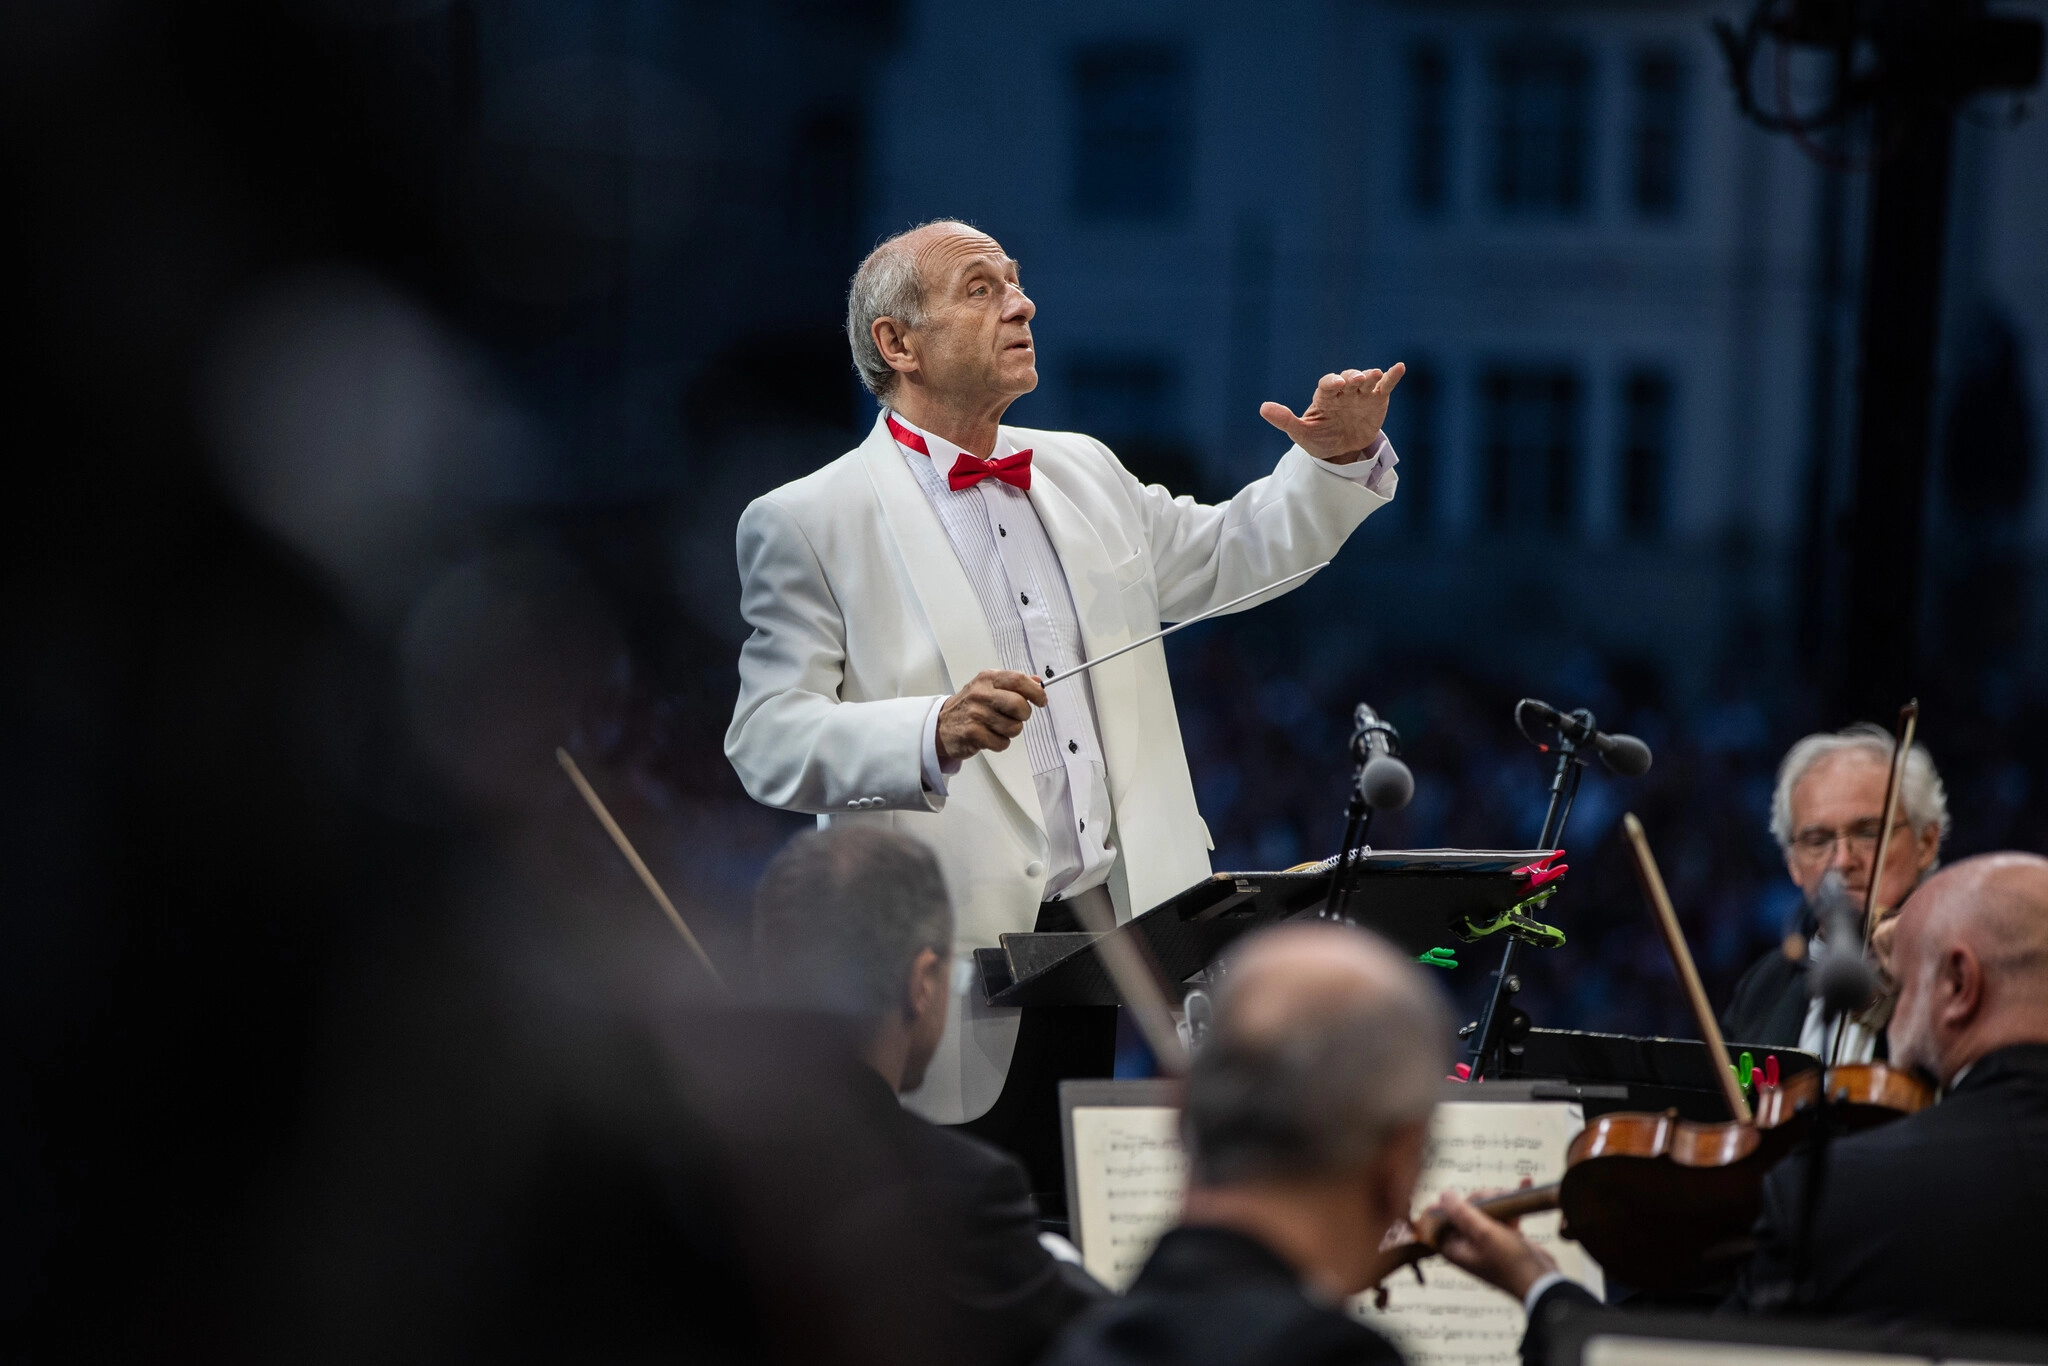 A Budapesti Fesztiválzenekar ünnepi hangversenye a Dohány utcai zsinagógában